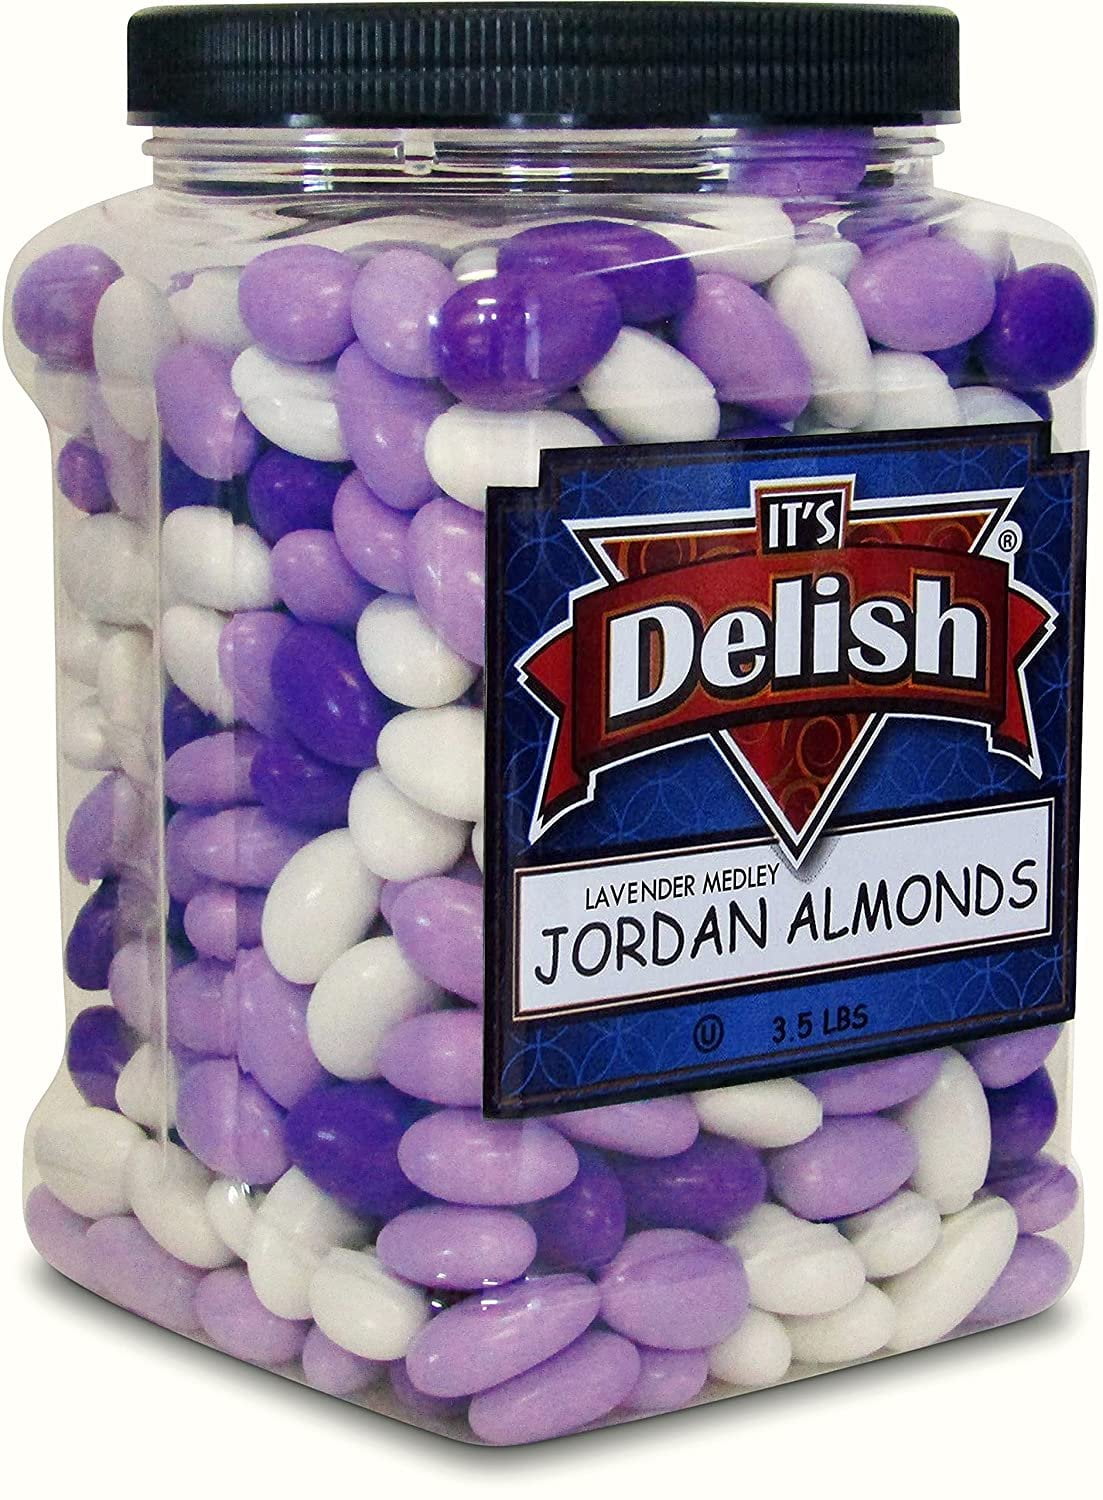 Lavender Purple & White Jordan Almonds Medley by It's Delish, 3.5 LBS ...